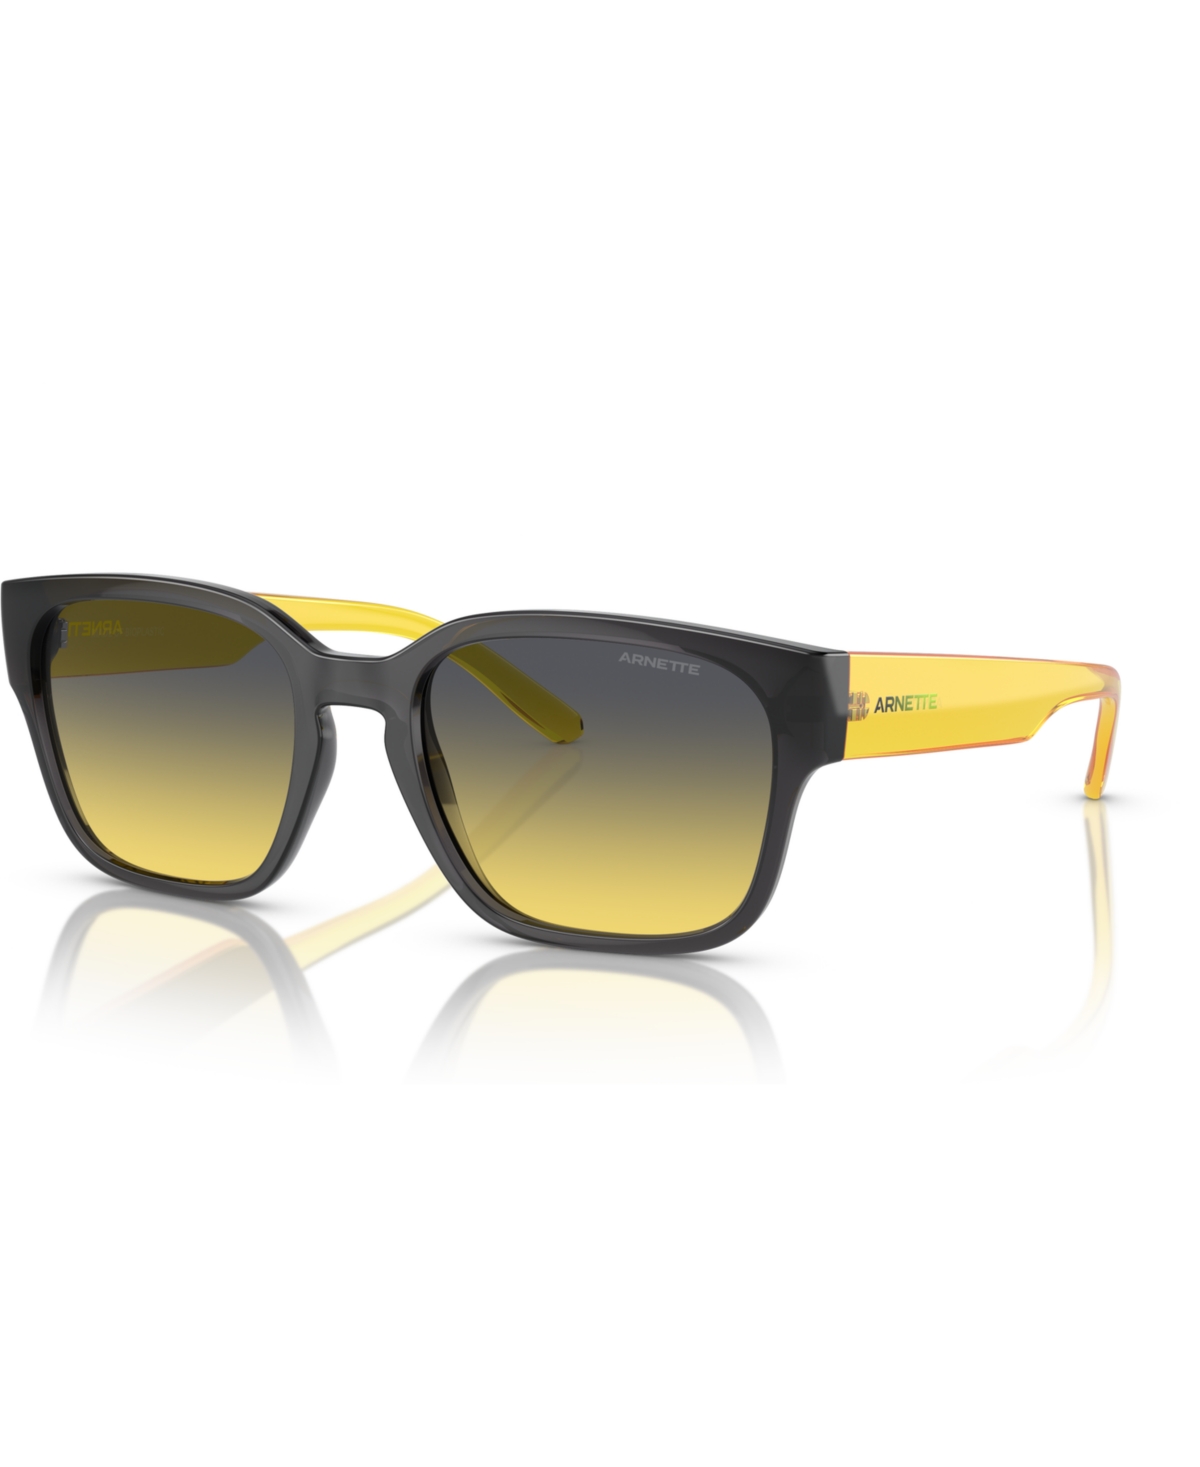 Men's Hamie Sunglasses, Gradient AN4325 - Transparent Gray